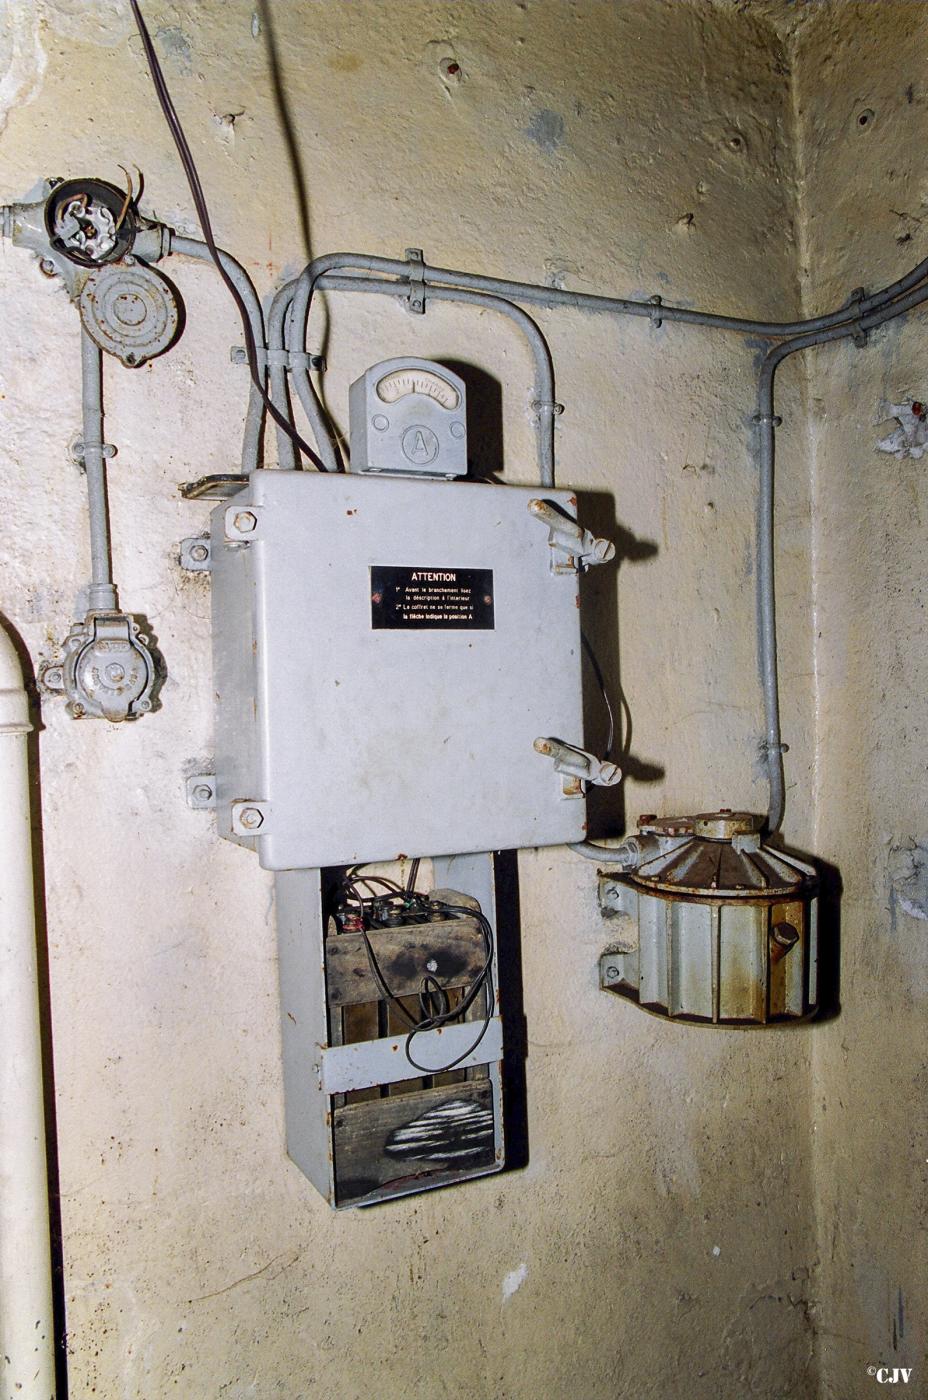 Ligne Maginot - SENTZICH - A16 - (Ouvrage d'infanterie) - Casemate Nord
Système d'alimentation électrique spécifique pour l'éclairage de la cloche GFM utilisée comme observatoire d'artillerie. Ce système permettait de faire varier l'intensité lumineuse dans la cloche et assurait l'alimentation sur batteries meme en cas de coupure du réseau électrique 